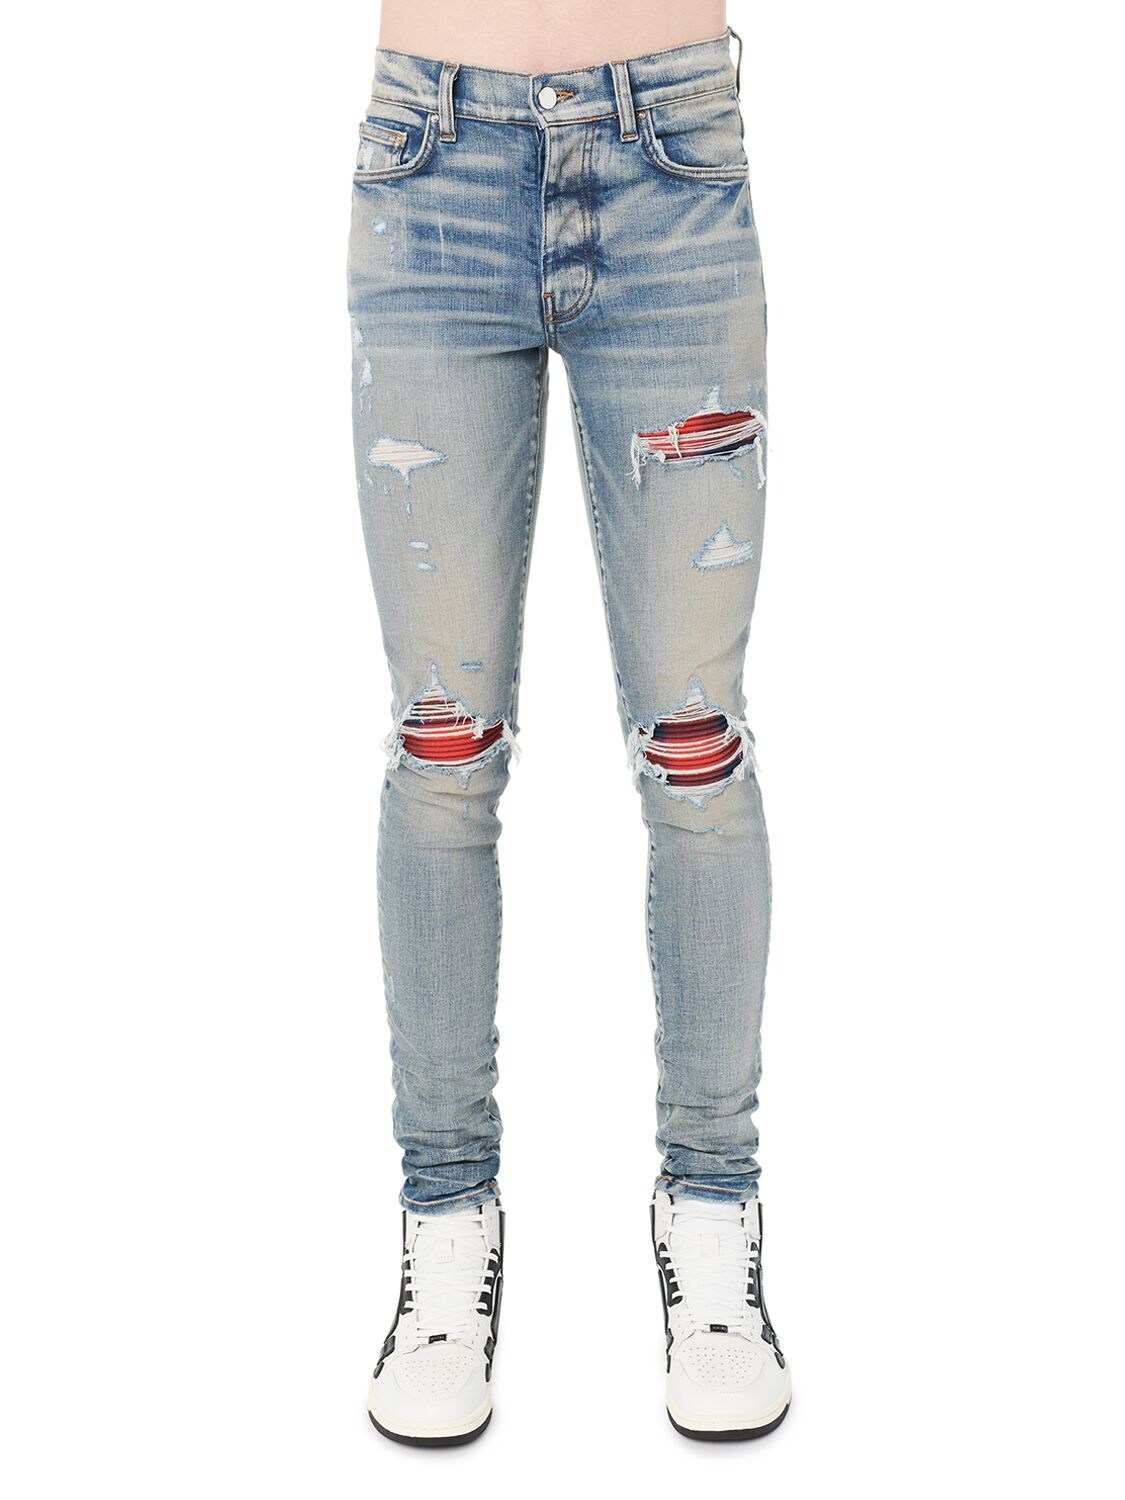 Plaid Mx1 Strech Cotton Denim Jeans